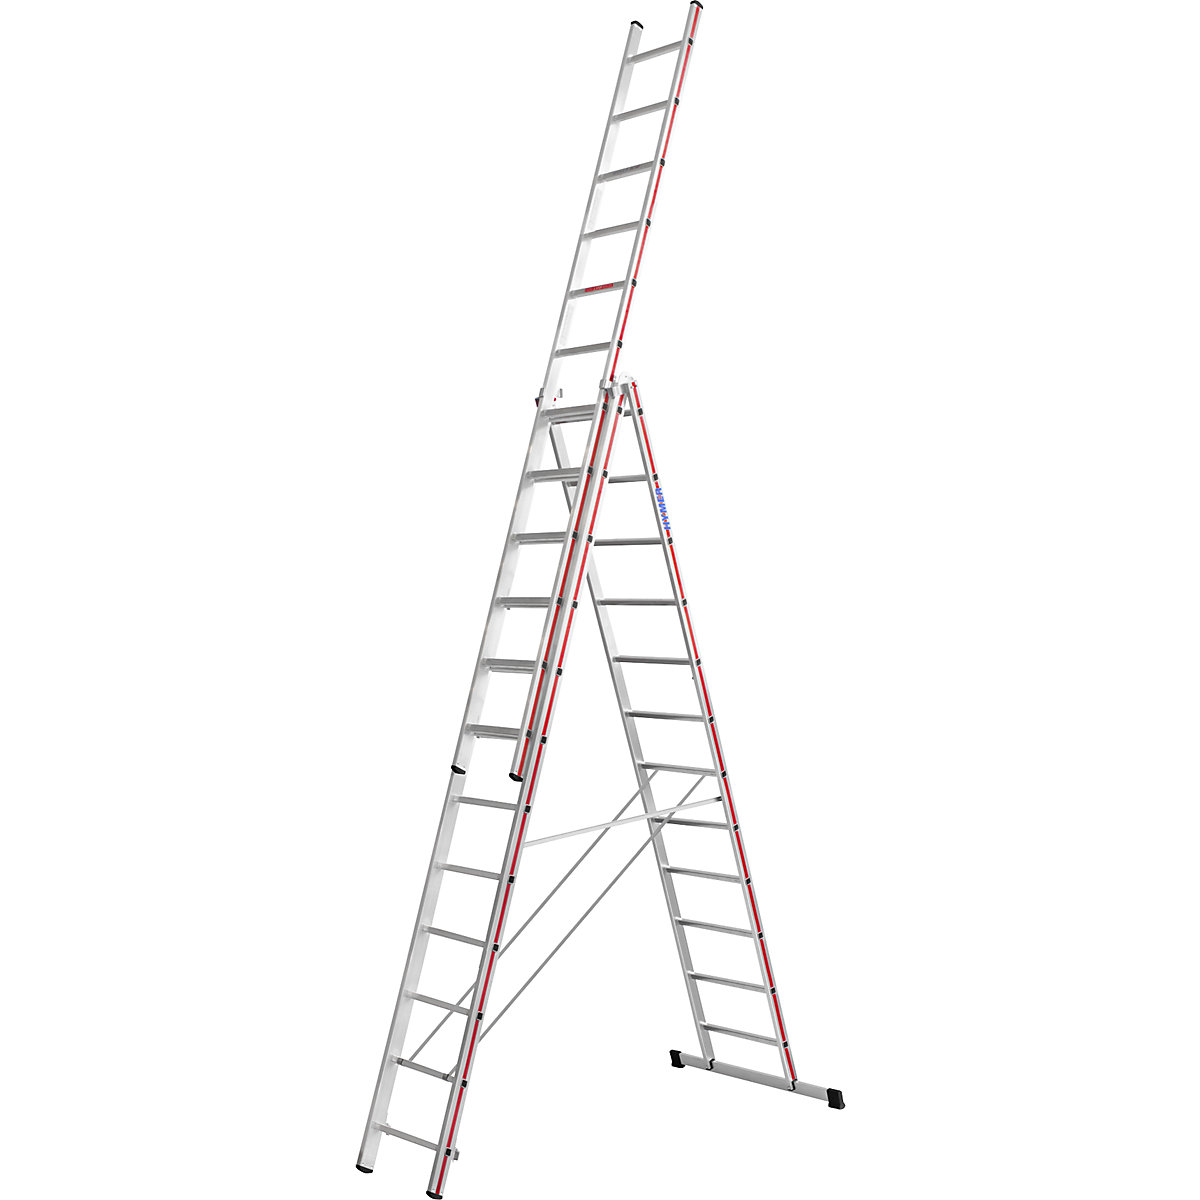 Aluminijasta večnamenska lestev – HYMER, profesionalna izvedba, 3 x 12 klinov, maks. delovna višina 9,32 m-15